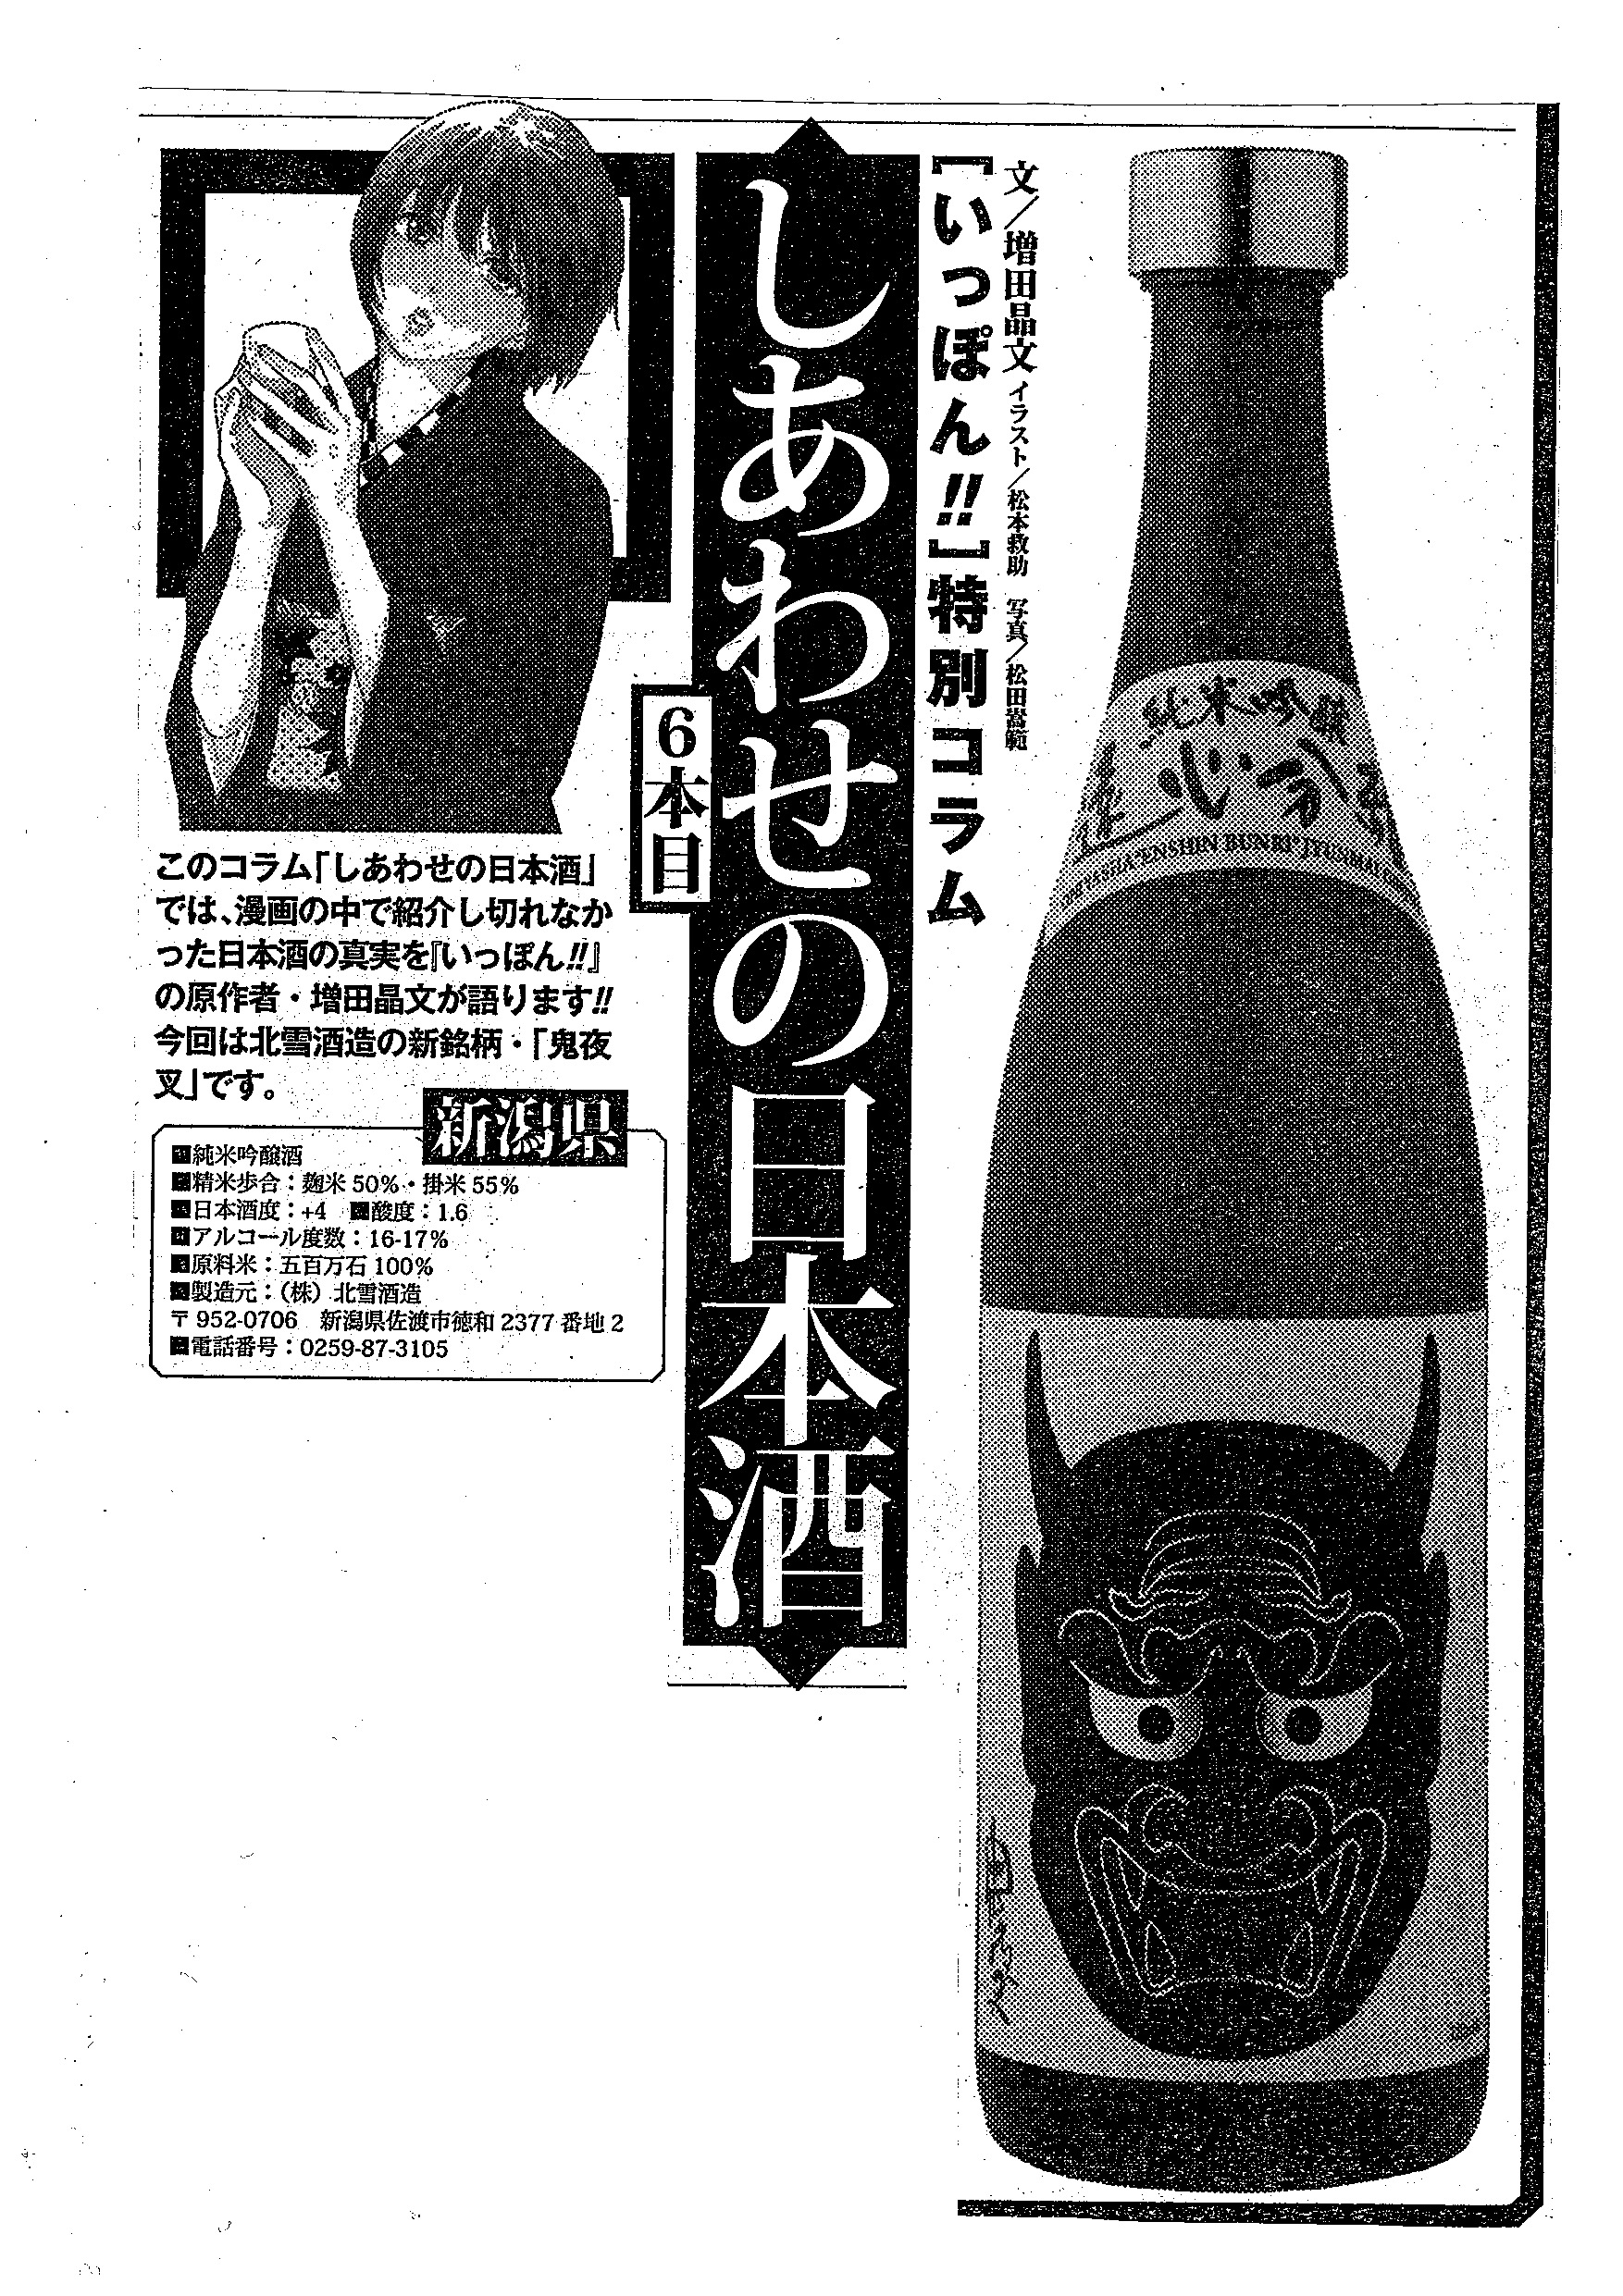 News 佐渡島から世界へ羽ばたく 日本酒 Hokusetsu